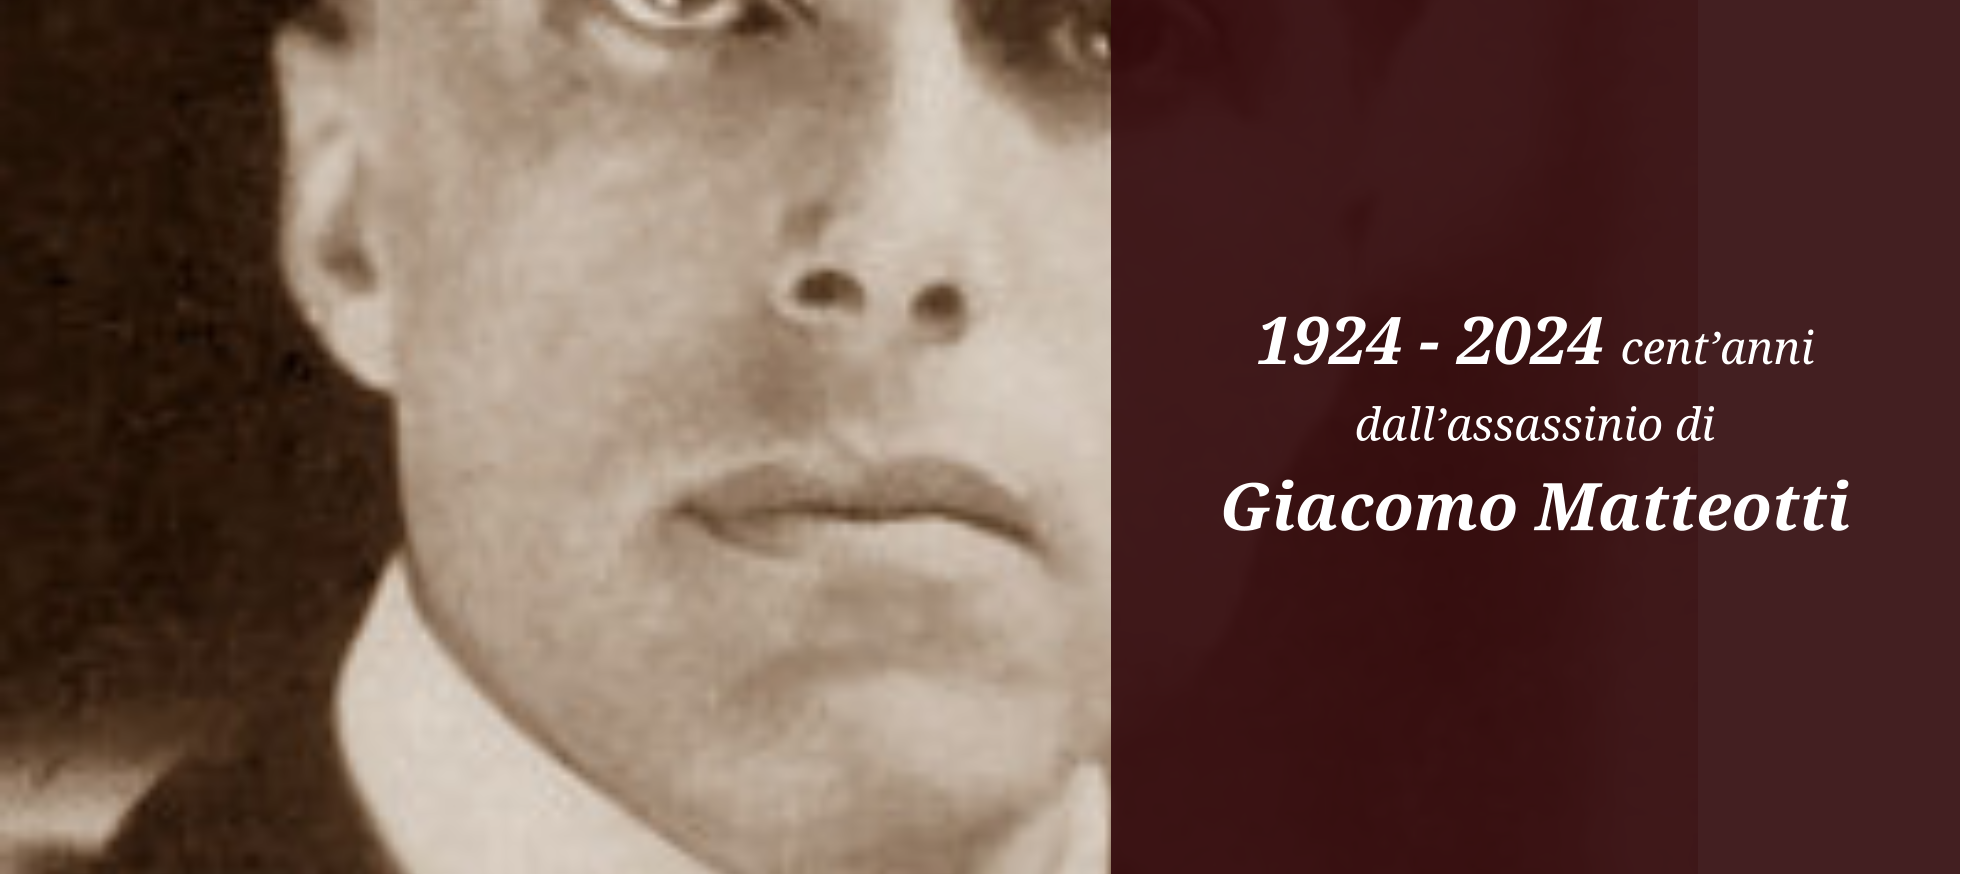 1924 - 2024 cent’anni dall’assassinio di Giacomo Matteotti